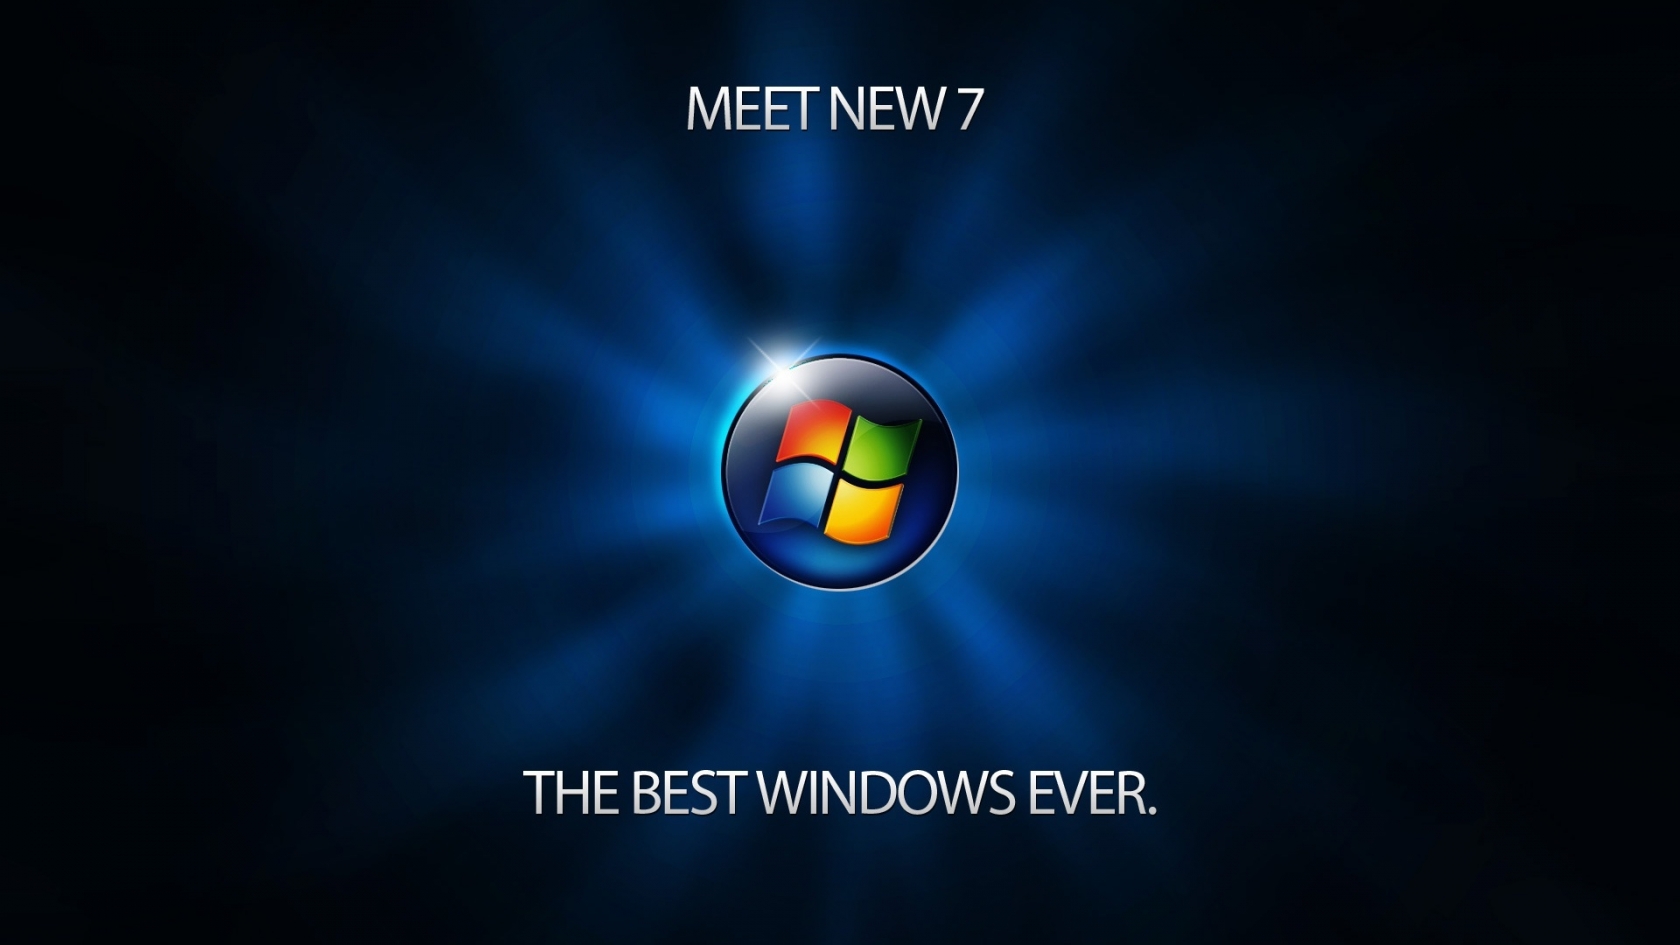 Meet Windows 7 for 1680 x 945 HDTV resolution